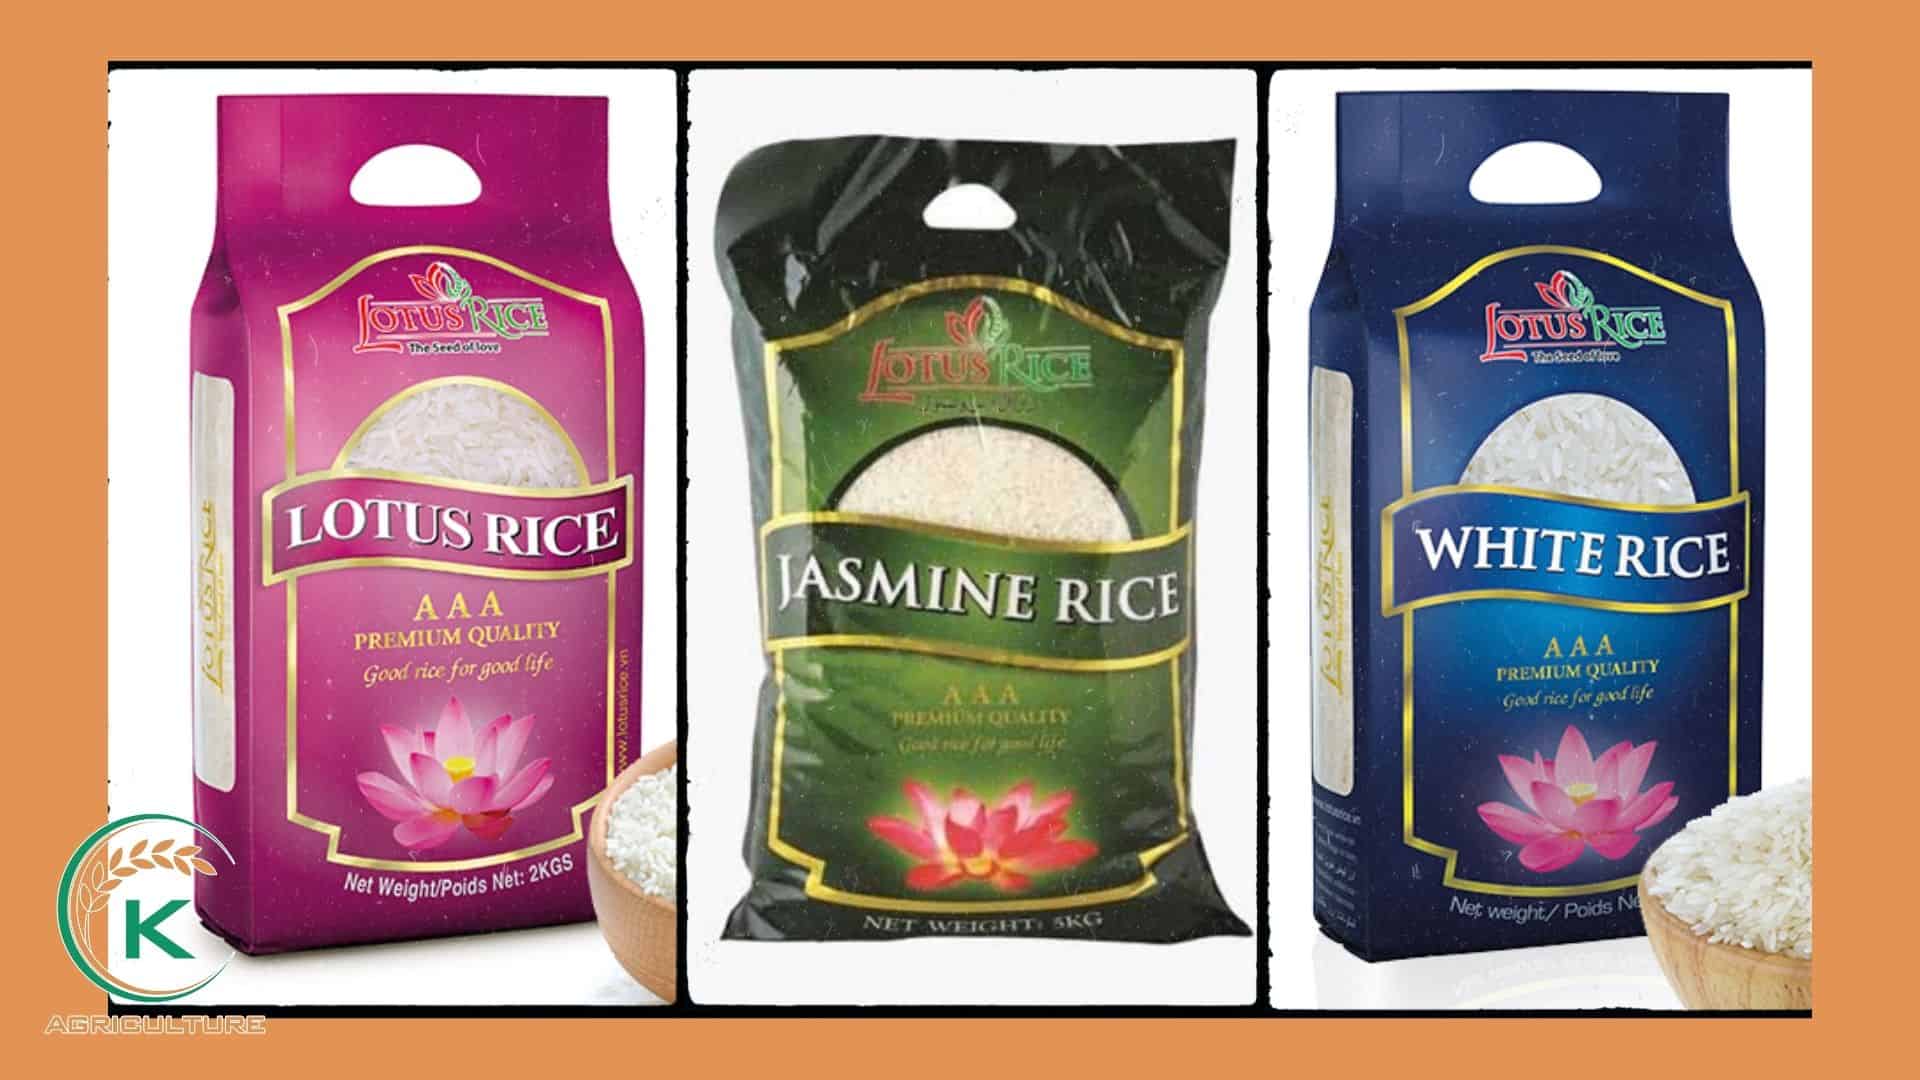 jasmine-rice-manufacturer-in-vietnam-12.jpg